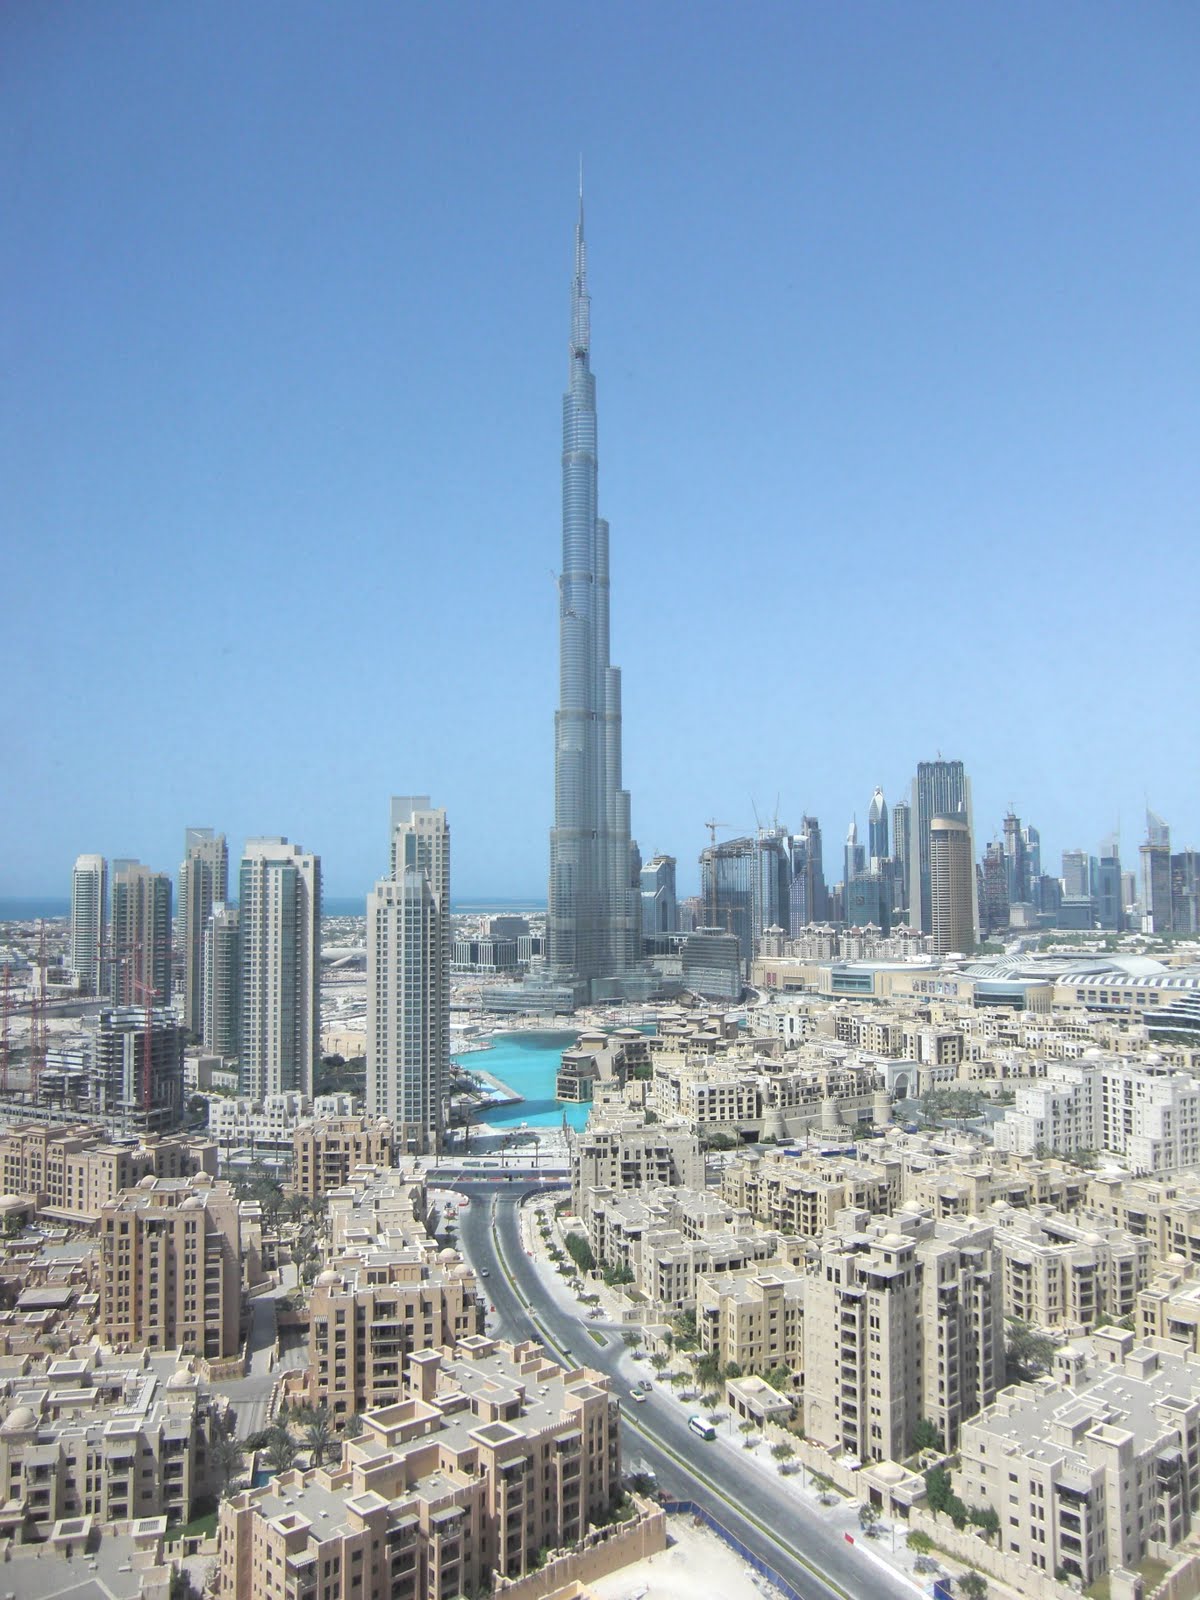 Dubai Tower Burj Khalifa